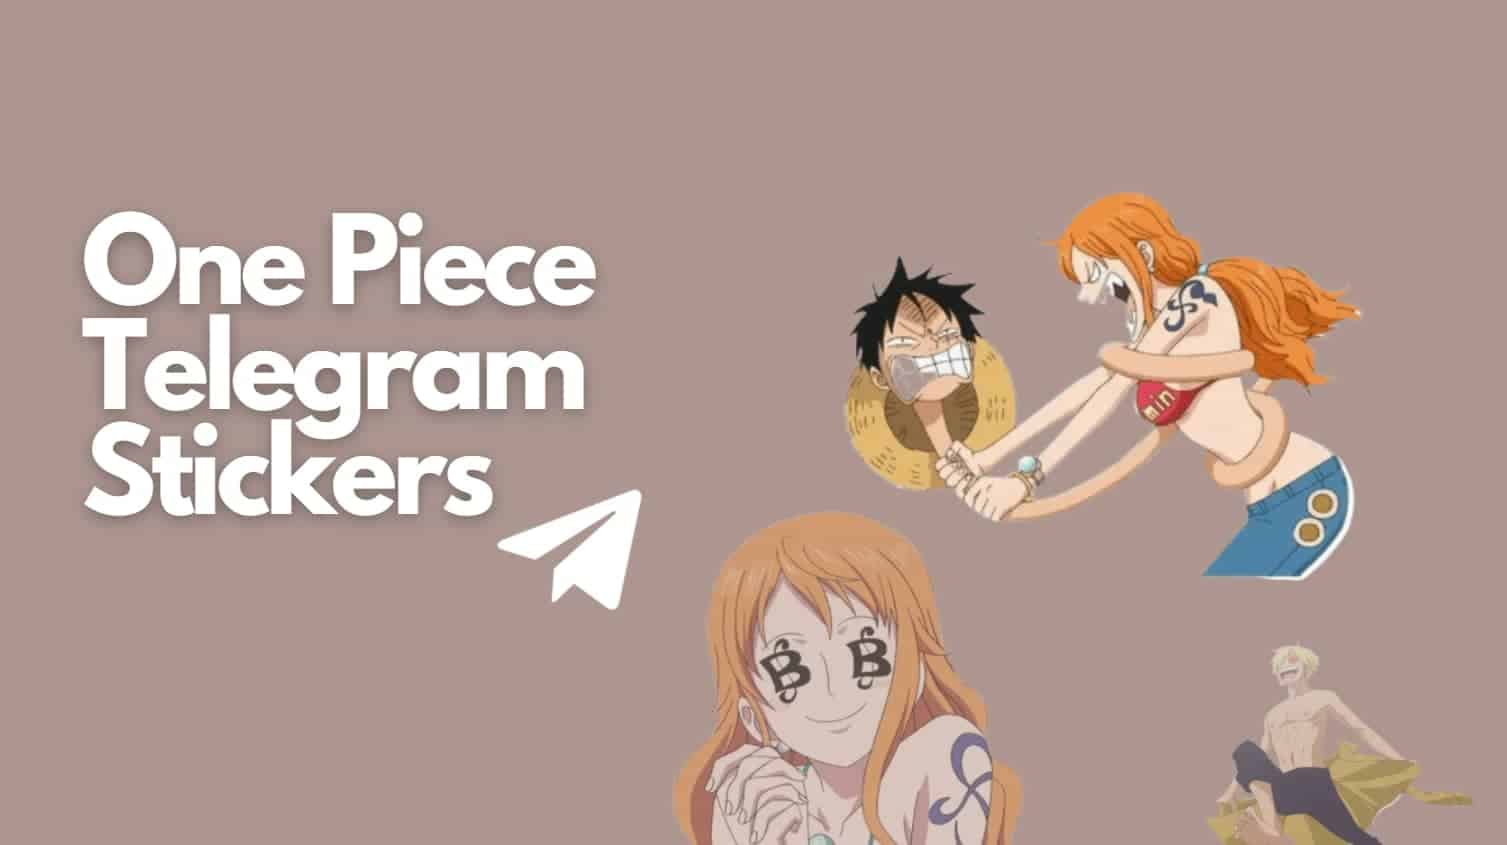 One Piece Telegram Stickers